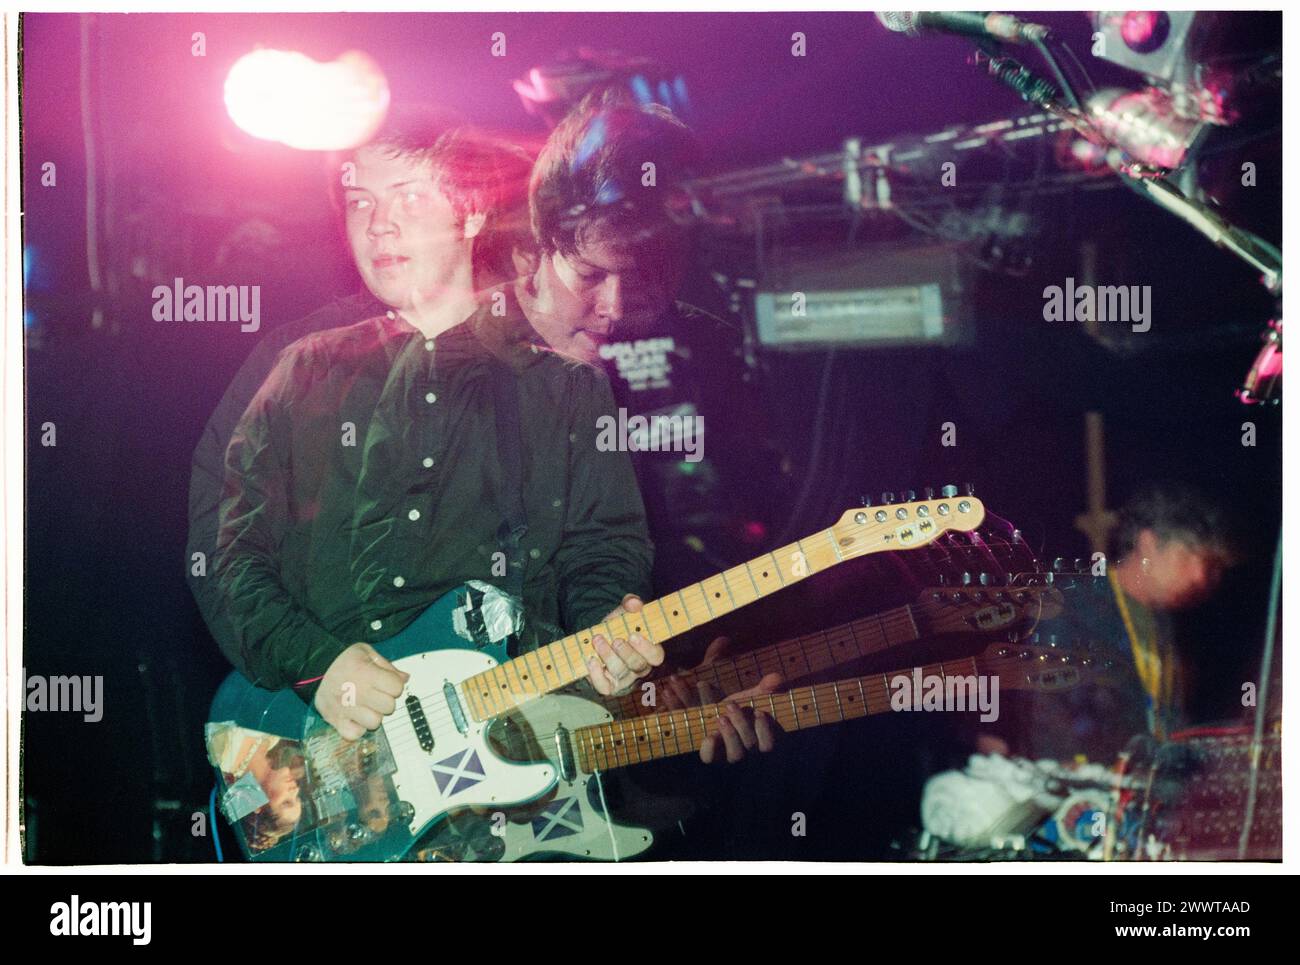 MOGWAI, ALL'INIZIO DELLA CARRIERA, CONCERTO del 1998: Un giovane Stuart Braithwaite di Mogwai che suonava al Reading Festival, Reading, Regno Unito, il 28 agosto 1998. Foto: Rob Watkins. INFO: I Mogwai, un gruppo post-rock scozzese formatosi nel 1995, incantano gli ascoltatori con i loro ampi paesaggi sonori e gli strumenti emozionali. Noti per le loro composizioni dinamiche e le potenti esibizioni dal vivo, la loro musica evoca una serie di emozioni, dall'introspezione all'euforia. Foto Stock